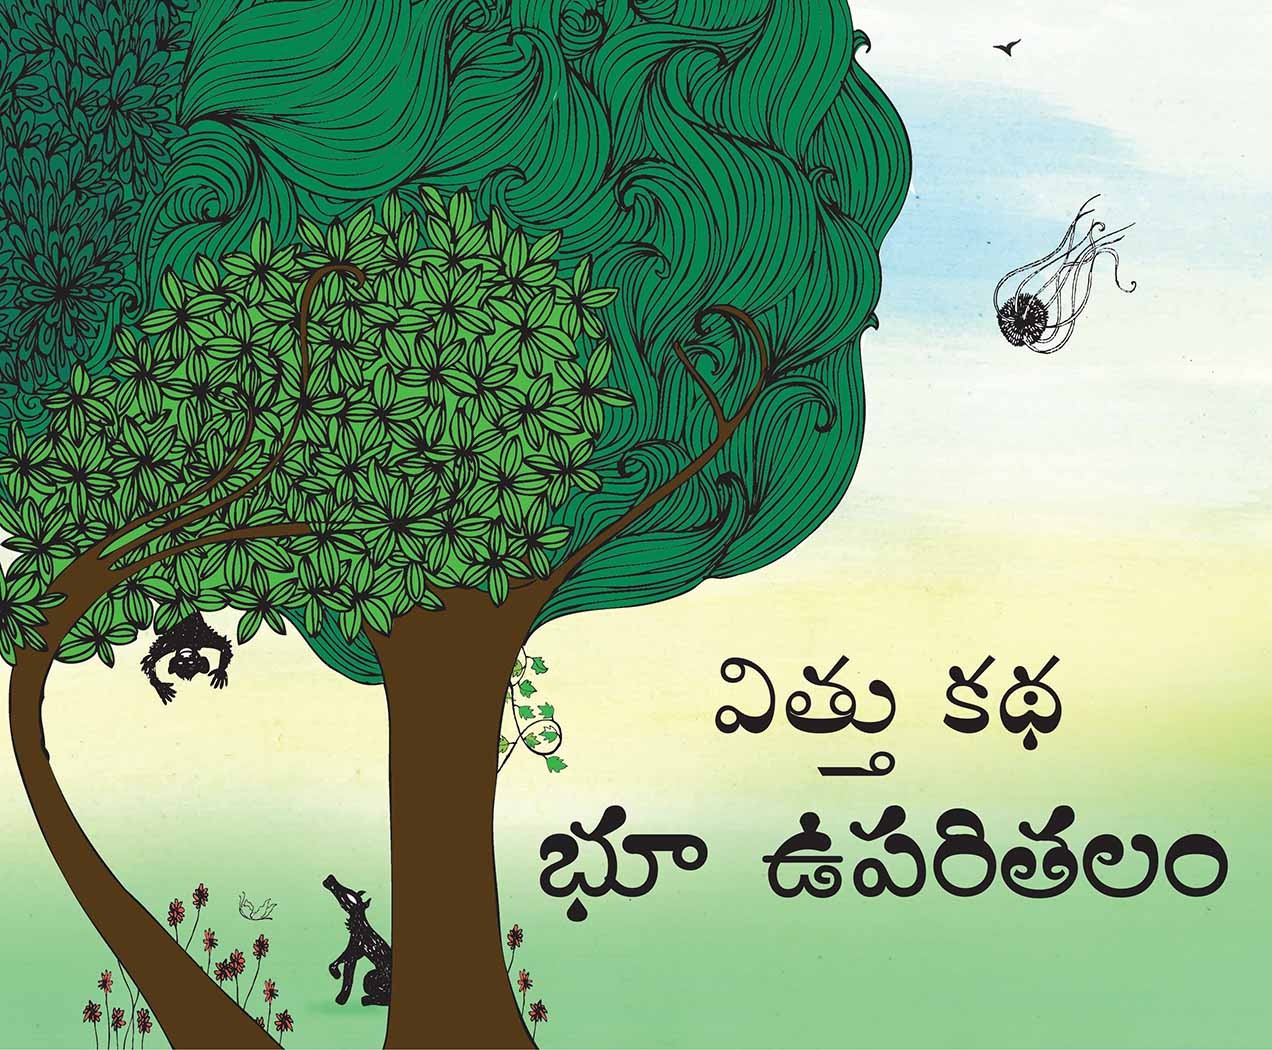 Beeji's Story-Earth's Surface/Vittu Katha-Bhoo Uparitalam (Telugu)